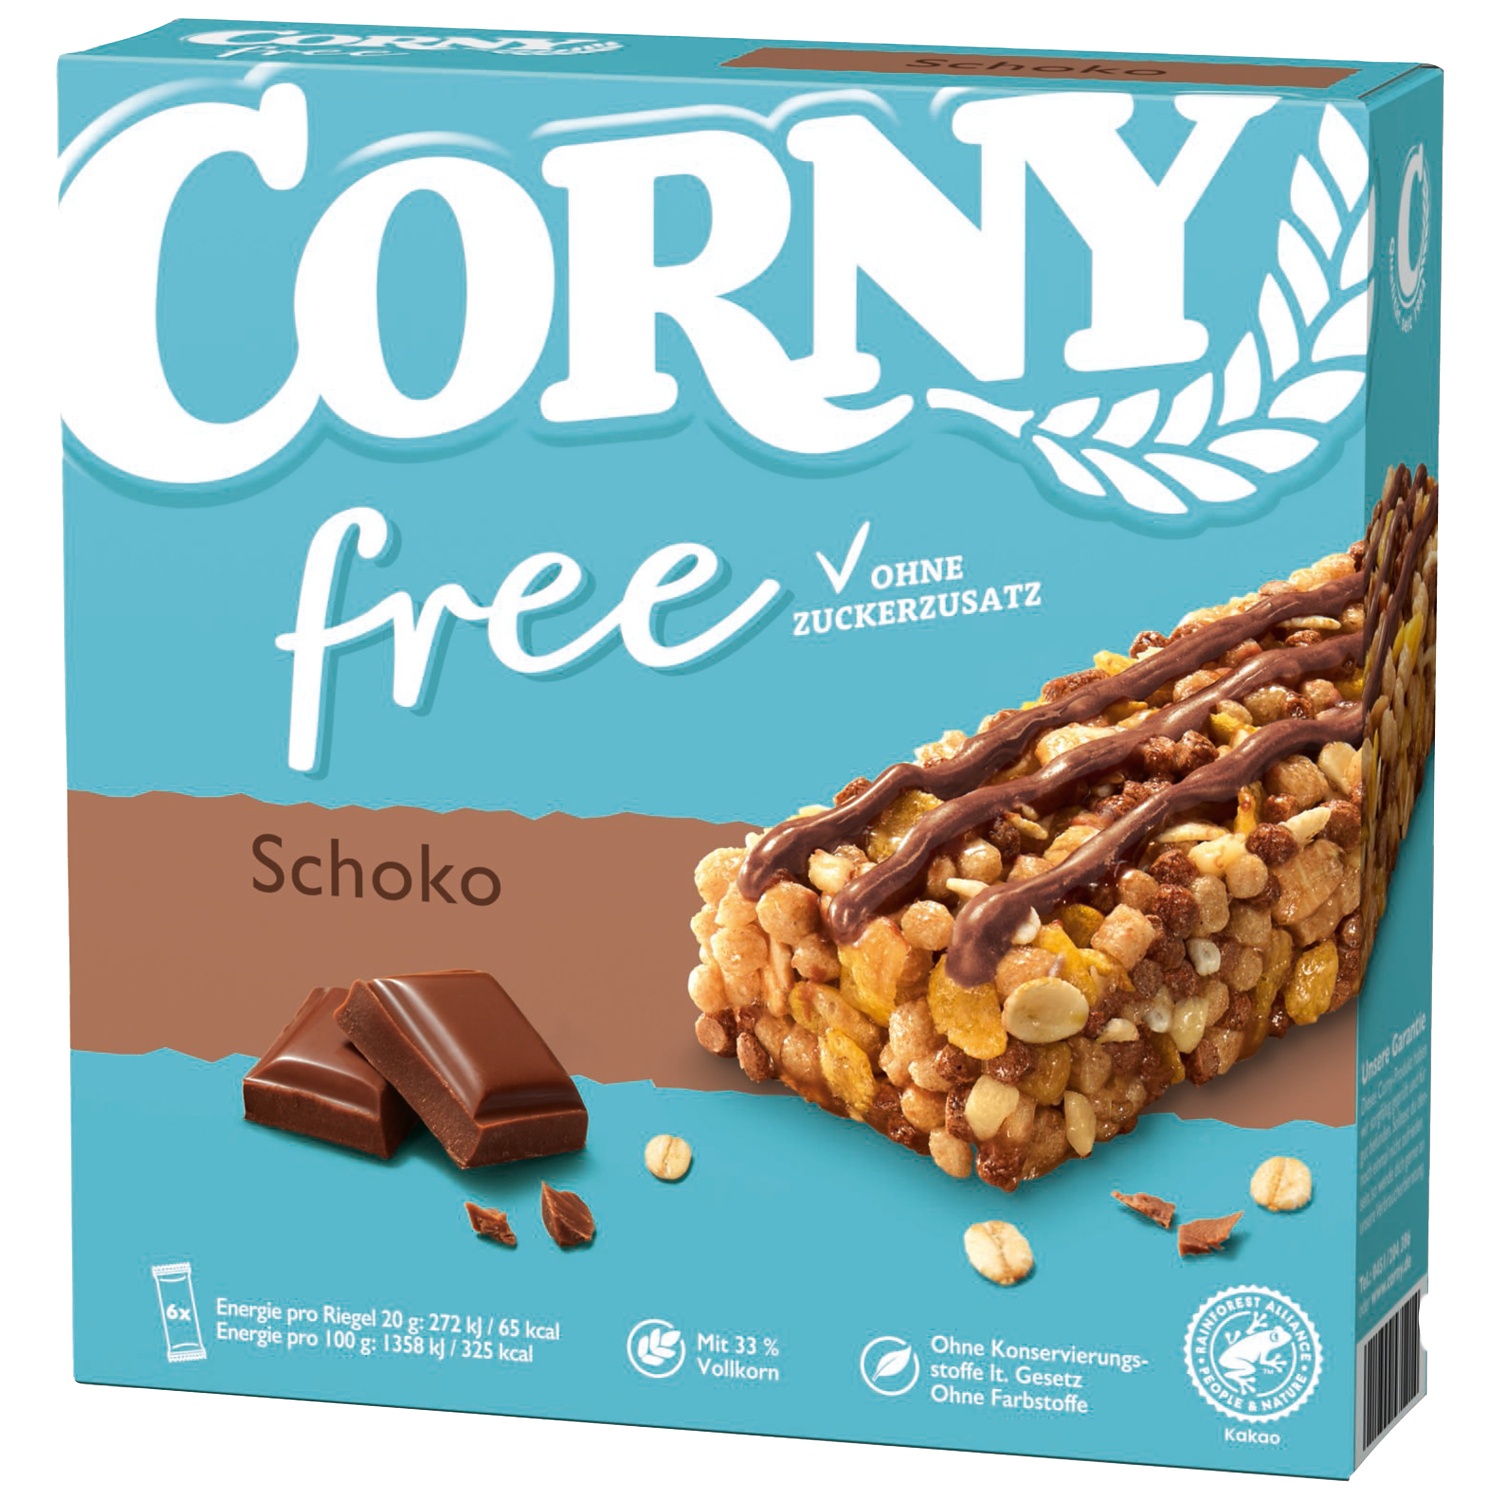 CORNY Barres de céréales, free choco